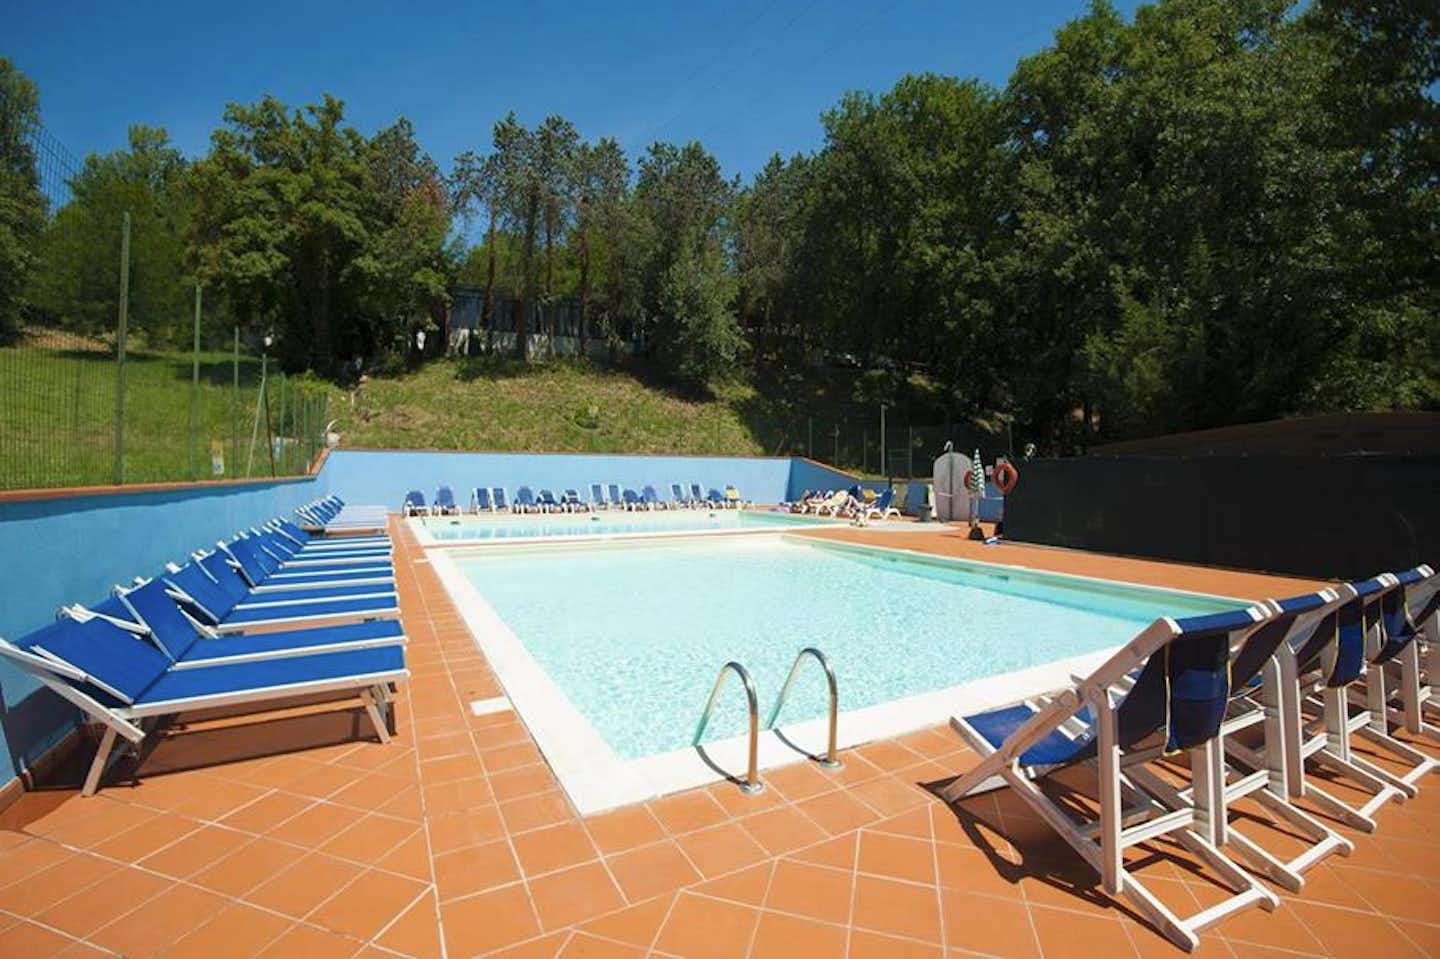 Camping Village Internazionale Firenze - Campingplatzanlage mit Pool und Liegestühlen in der Sonne